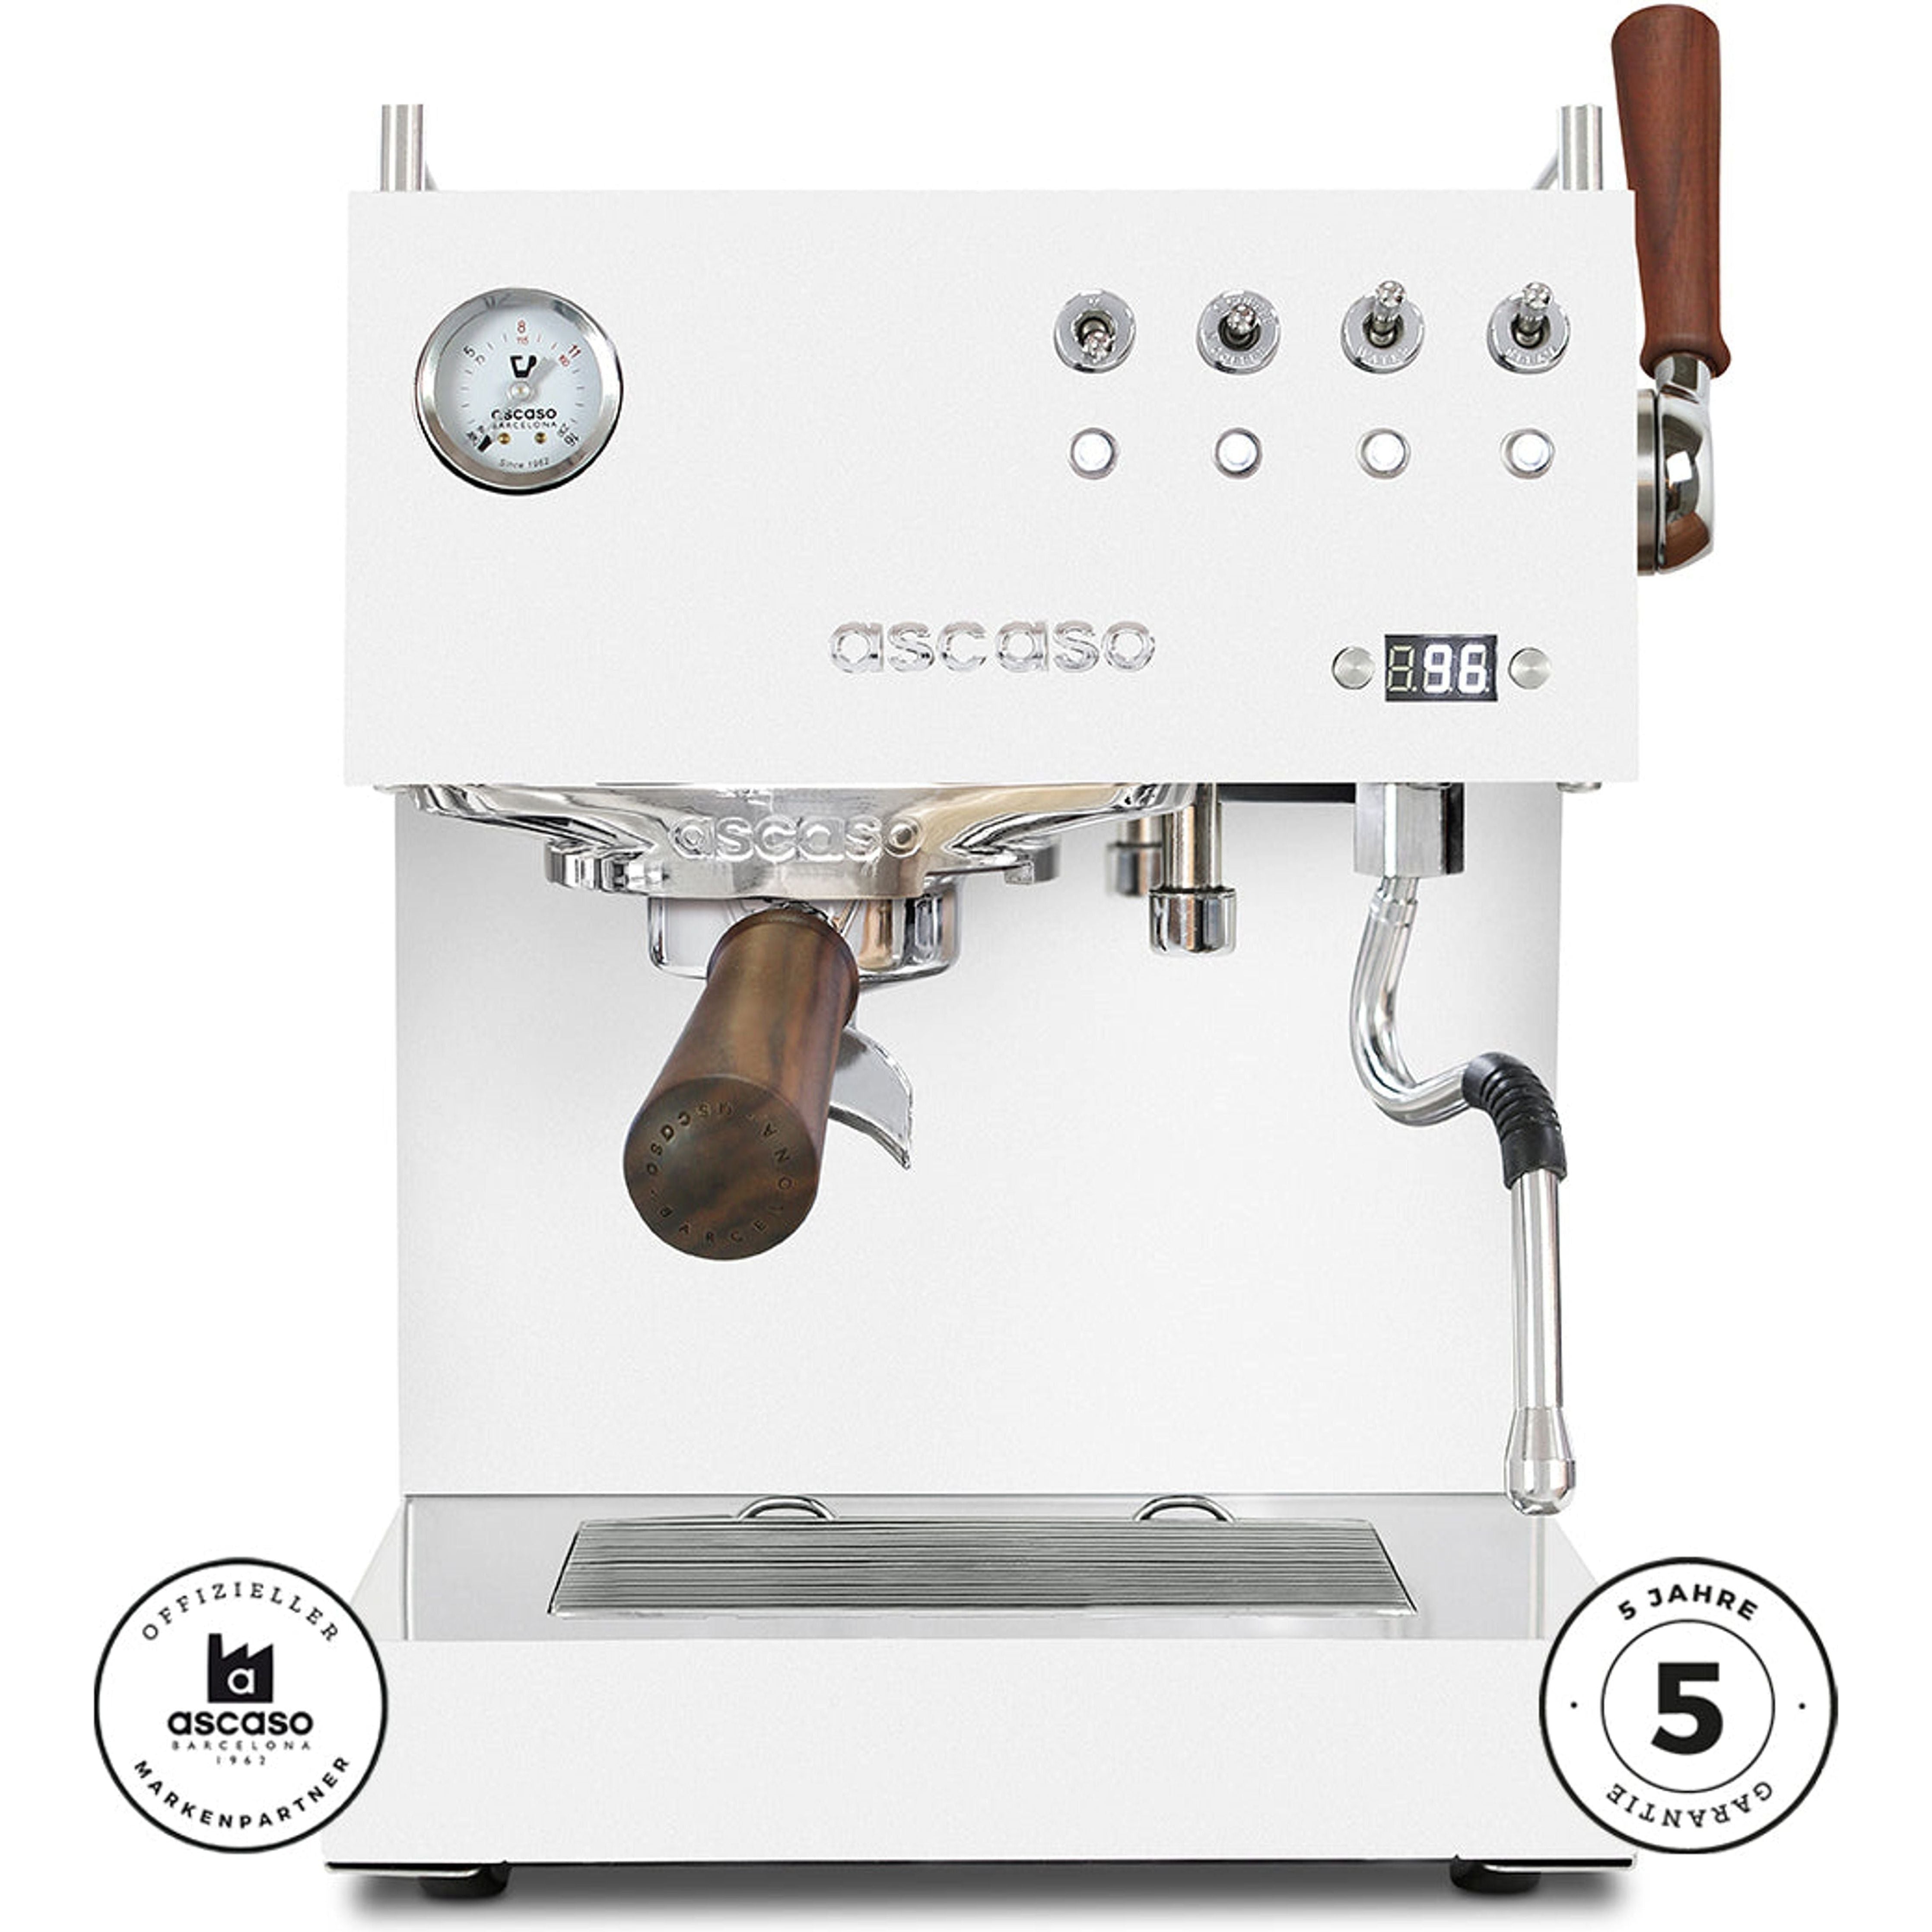 Ascaso Steel DUO PID PLUS | Schwarz Chrom oder Weiß | Das neue Modell Espressomaschinen Ascaso    - Rheinland.Coffee